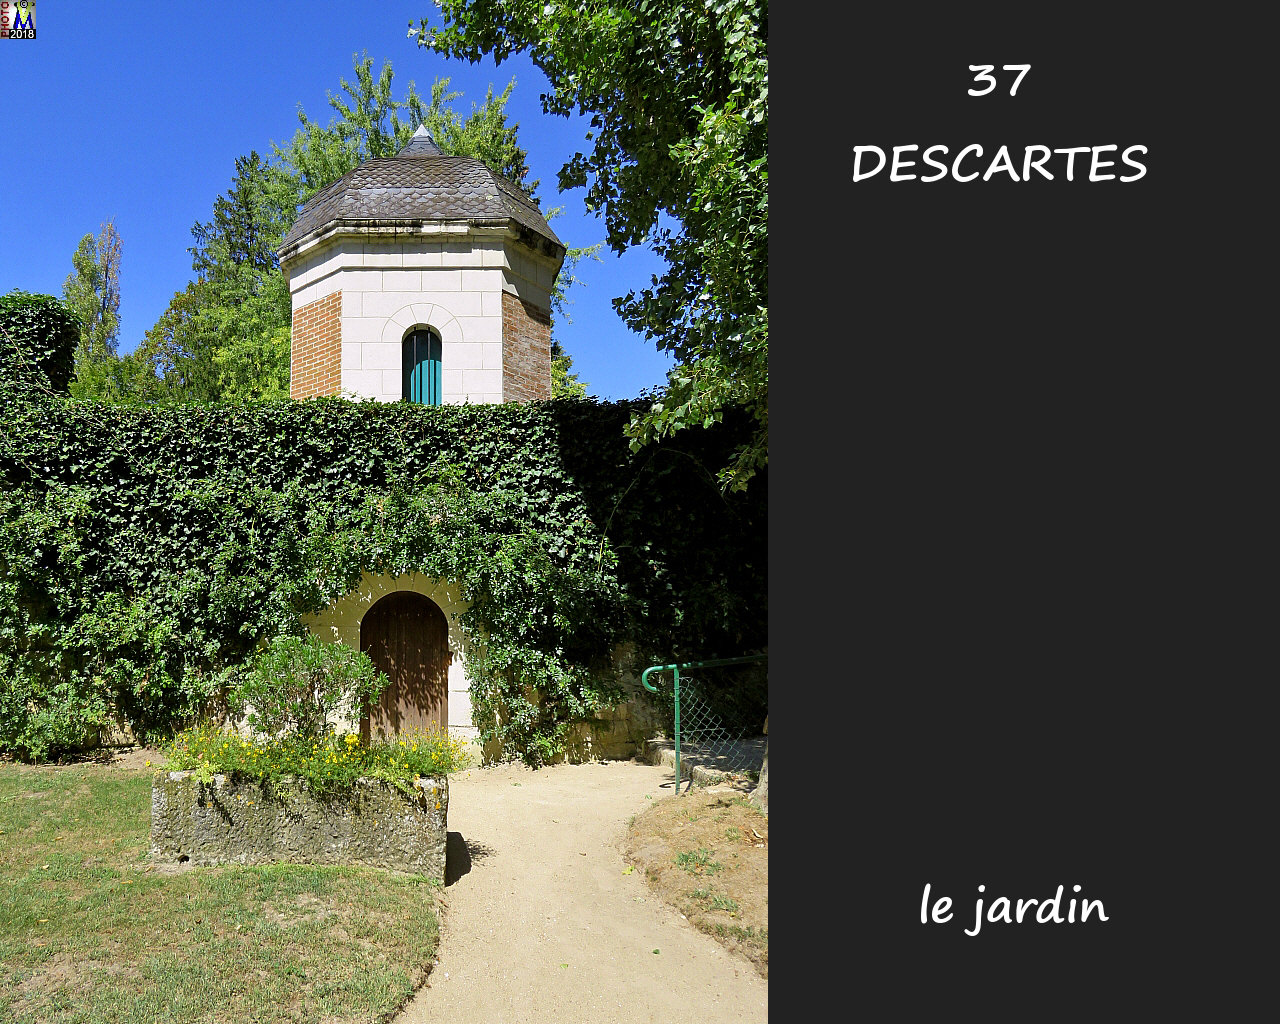 37DESCARTES_jardin_1008.jpg